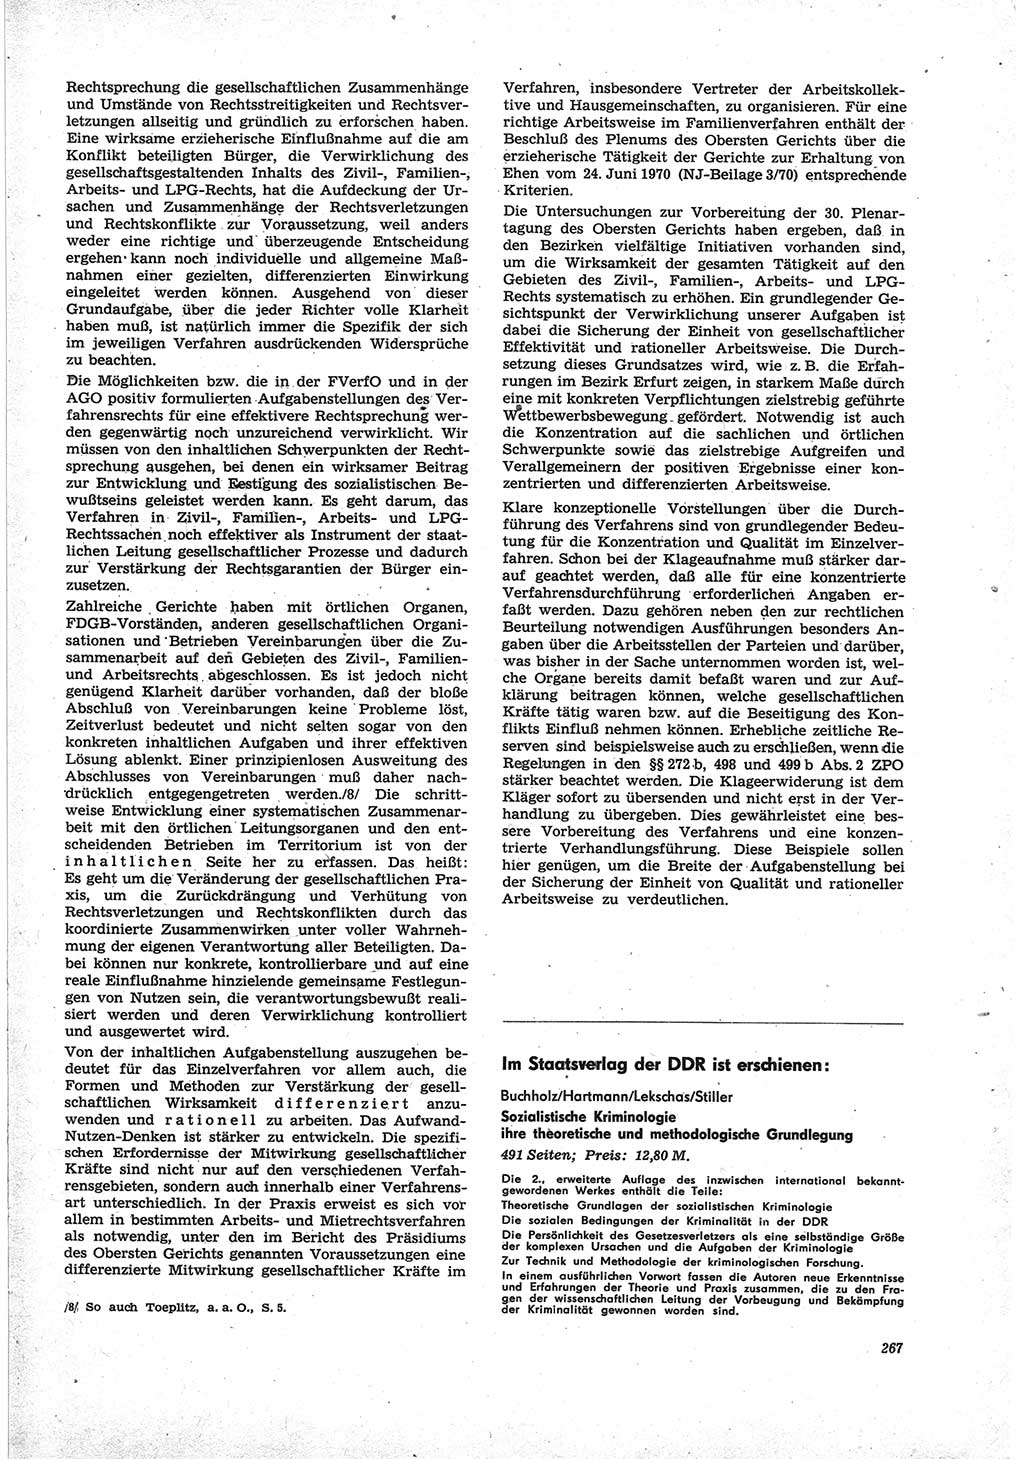 Neue Justiz (NJ), Zeitschrift für Recht und Rechtswissenschaft [Deutsche Demokratische Republik (DDR)], 25. Jahrgang 1971, Seite 267 (NJ DDR 1971, S. 267)